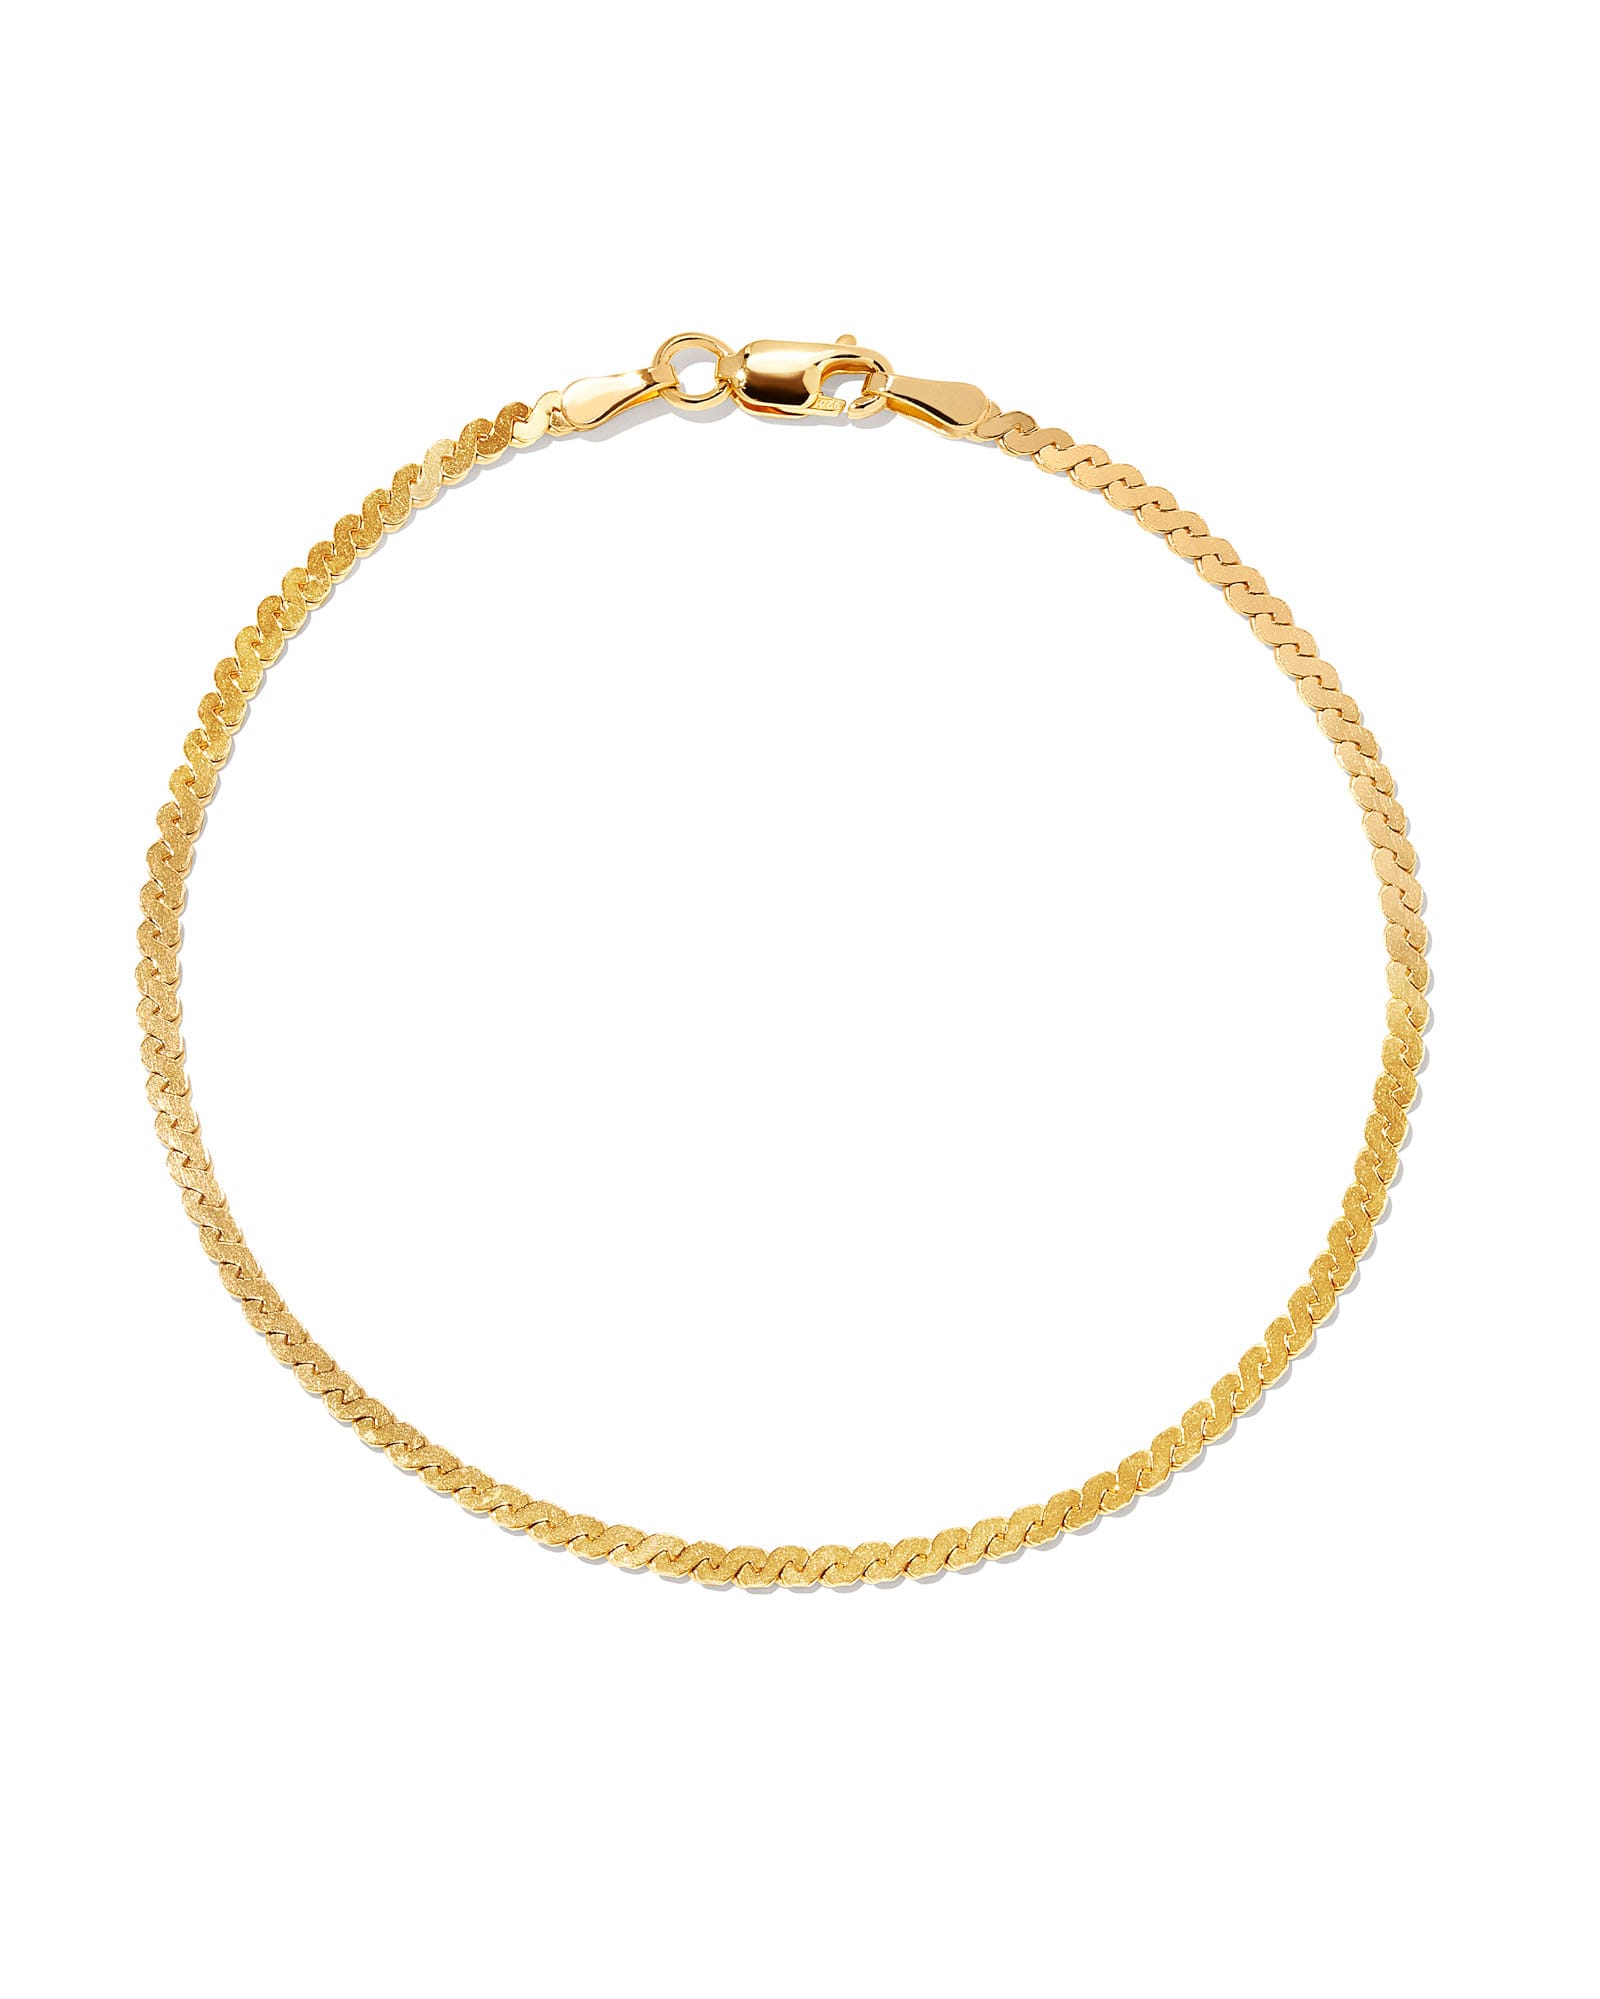 Fine Beaded Chain Bracelet in 18k Gold Vermeil on Sterling Silver